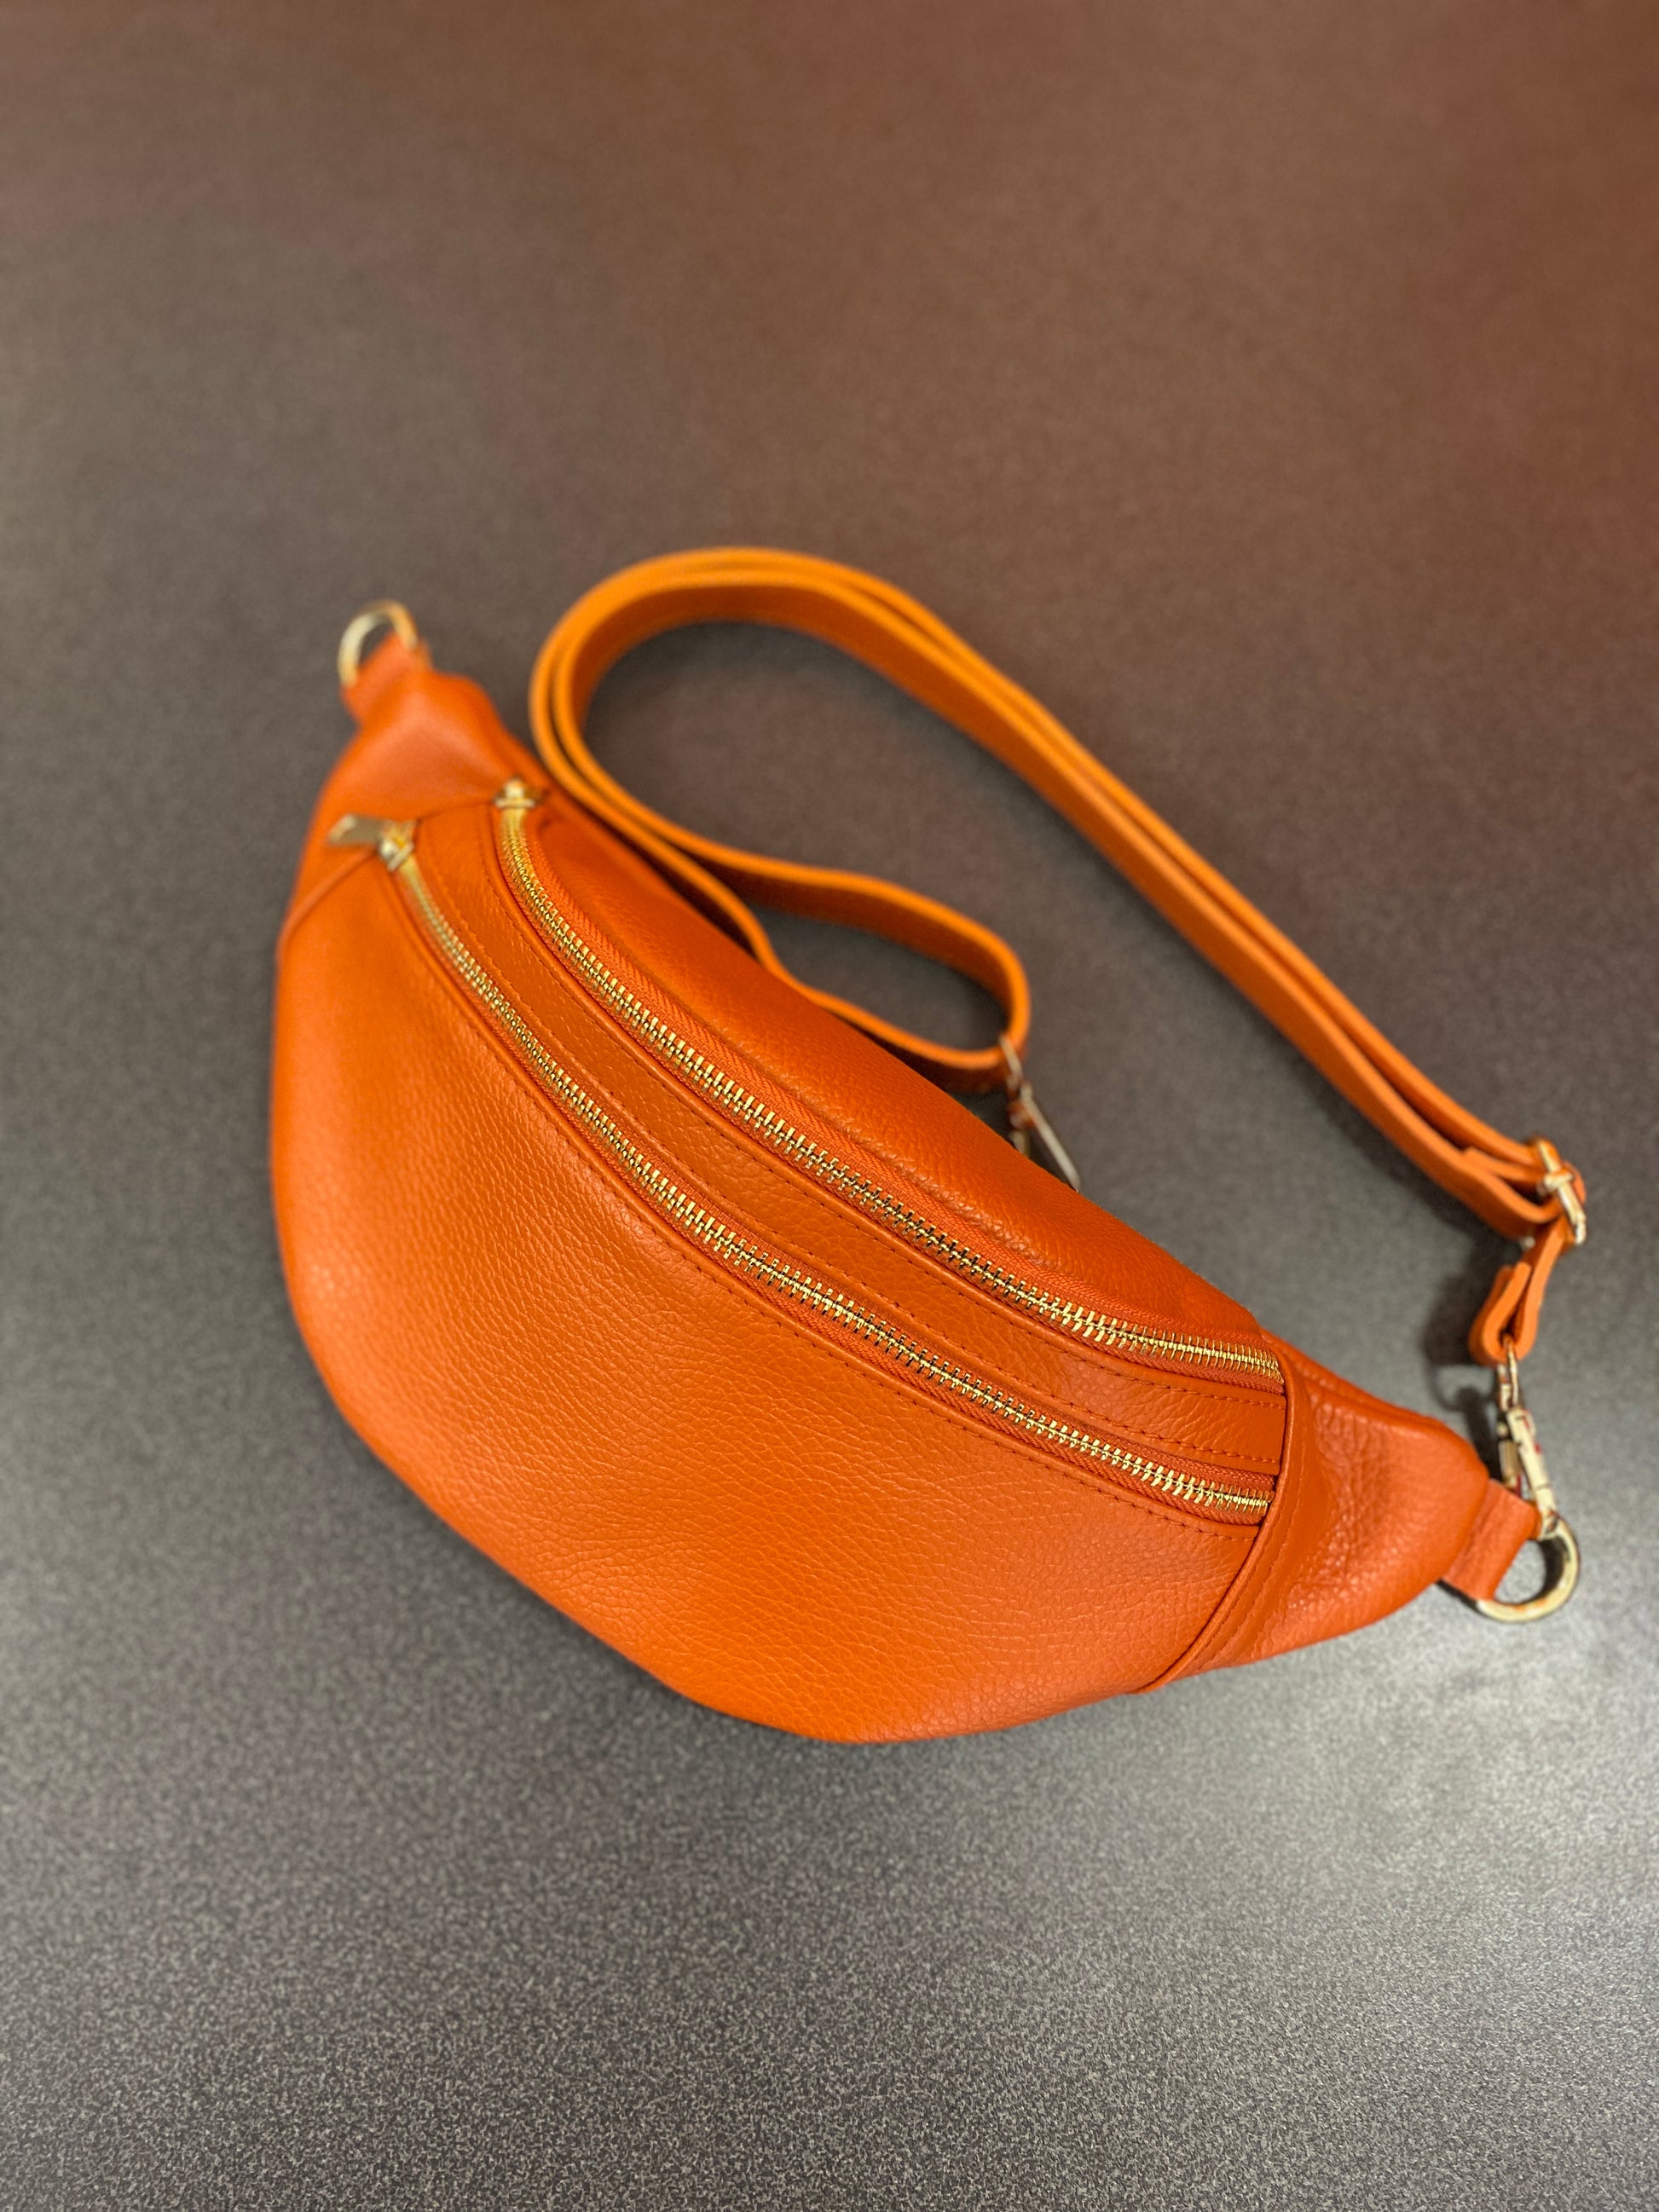 Alexa – The Italian Handbag Company